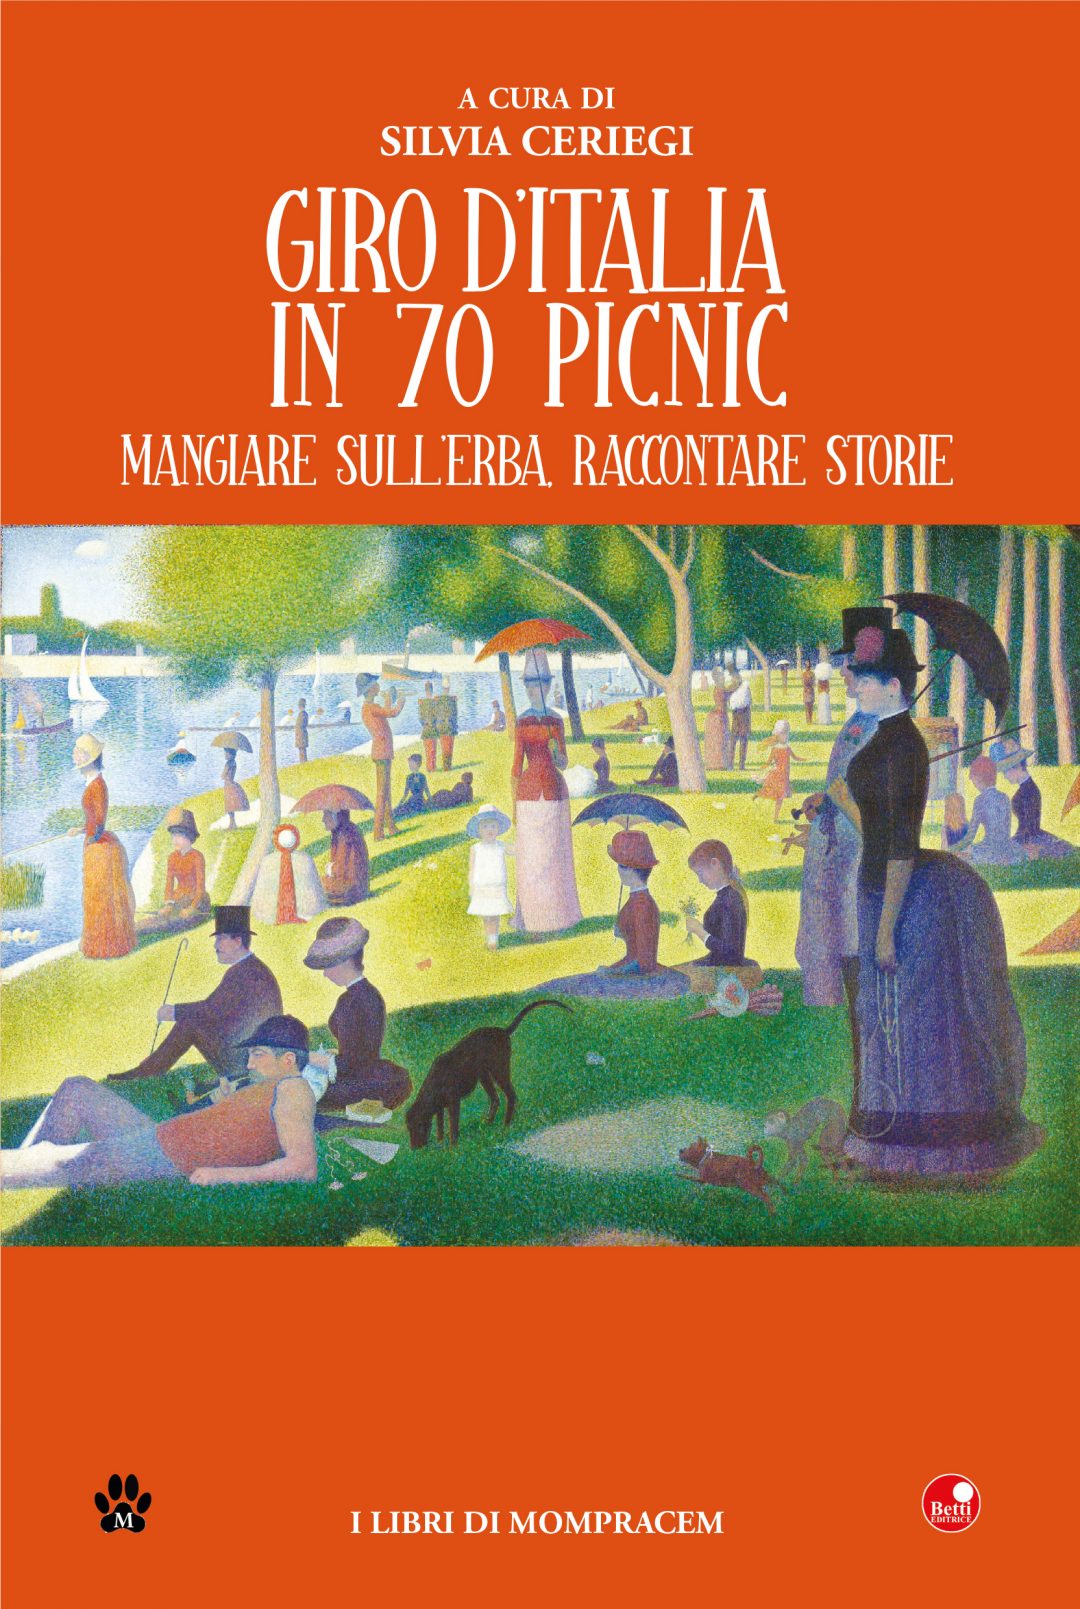 Idee originali per un picnic made in Italy: il libro